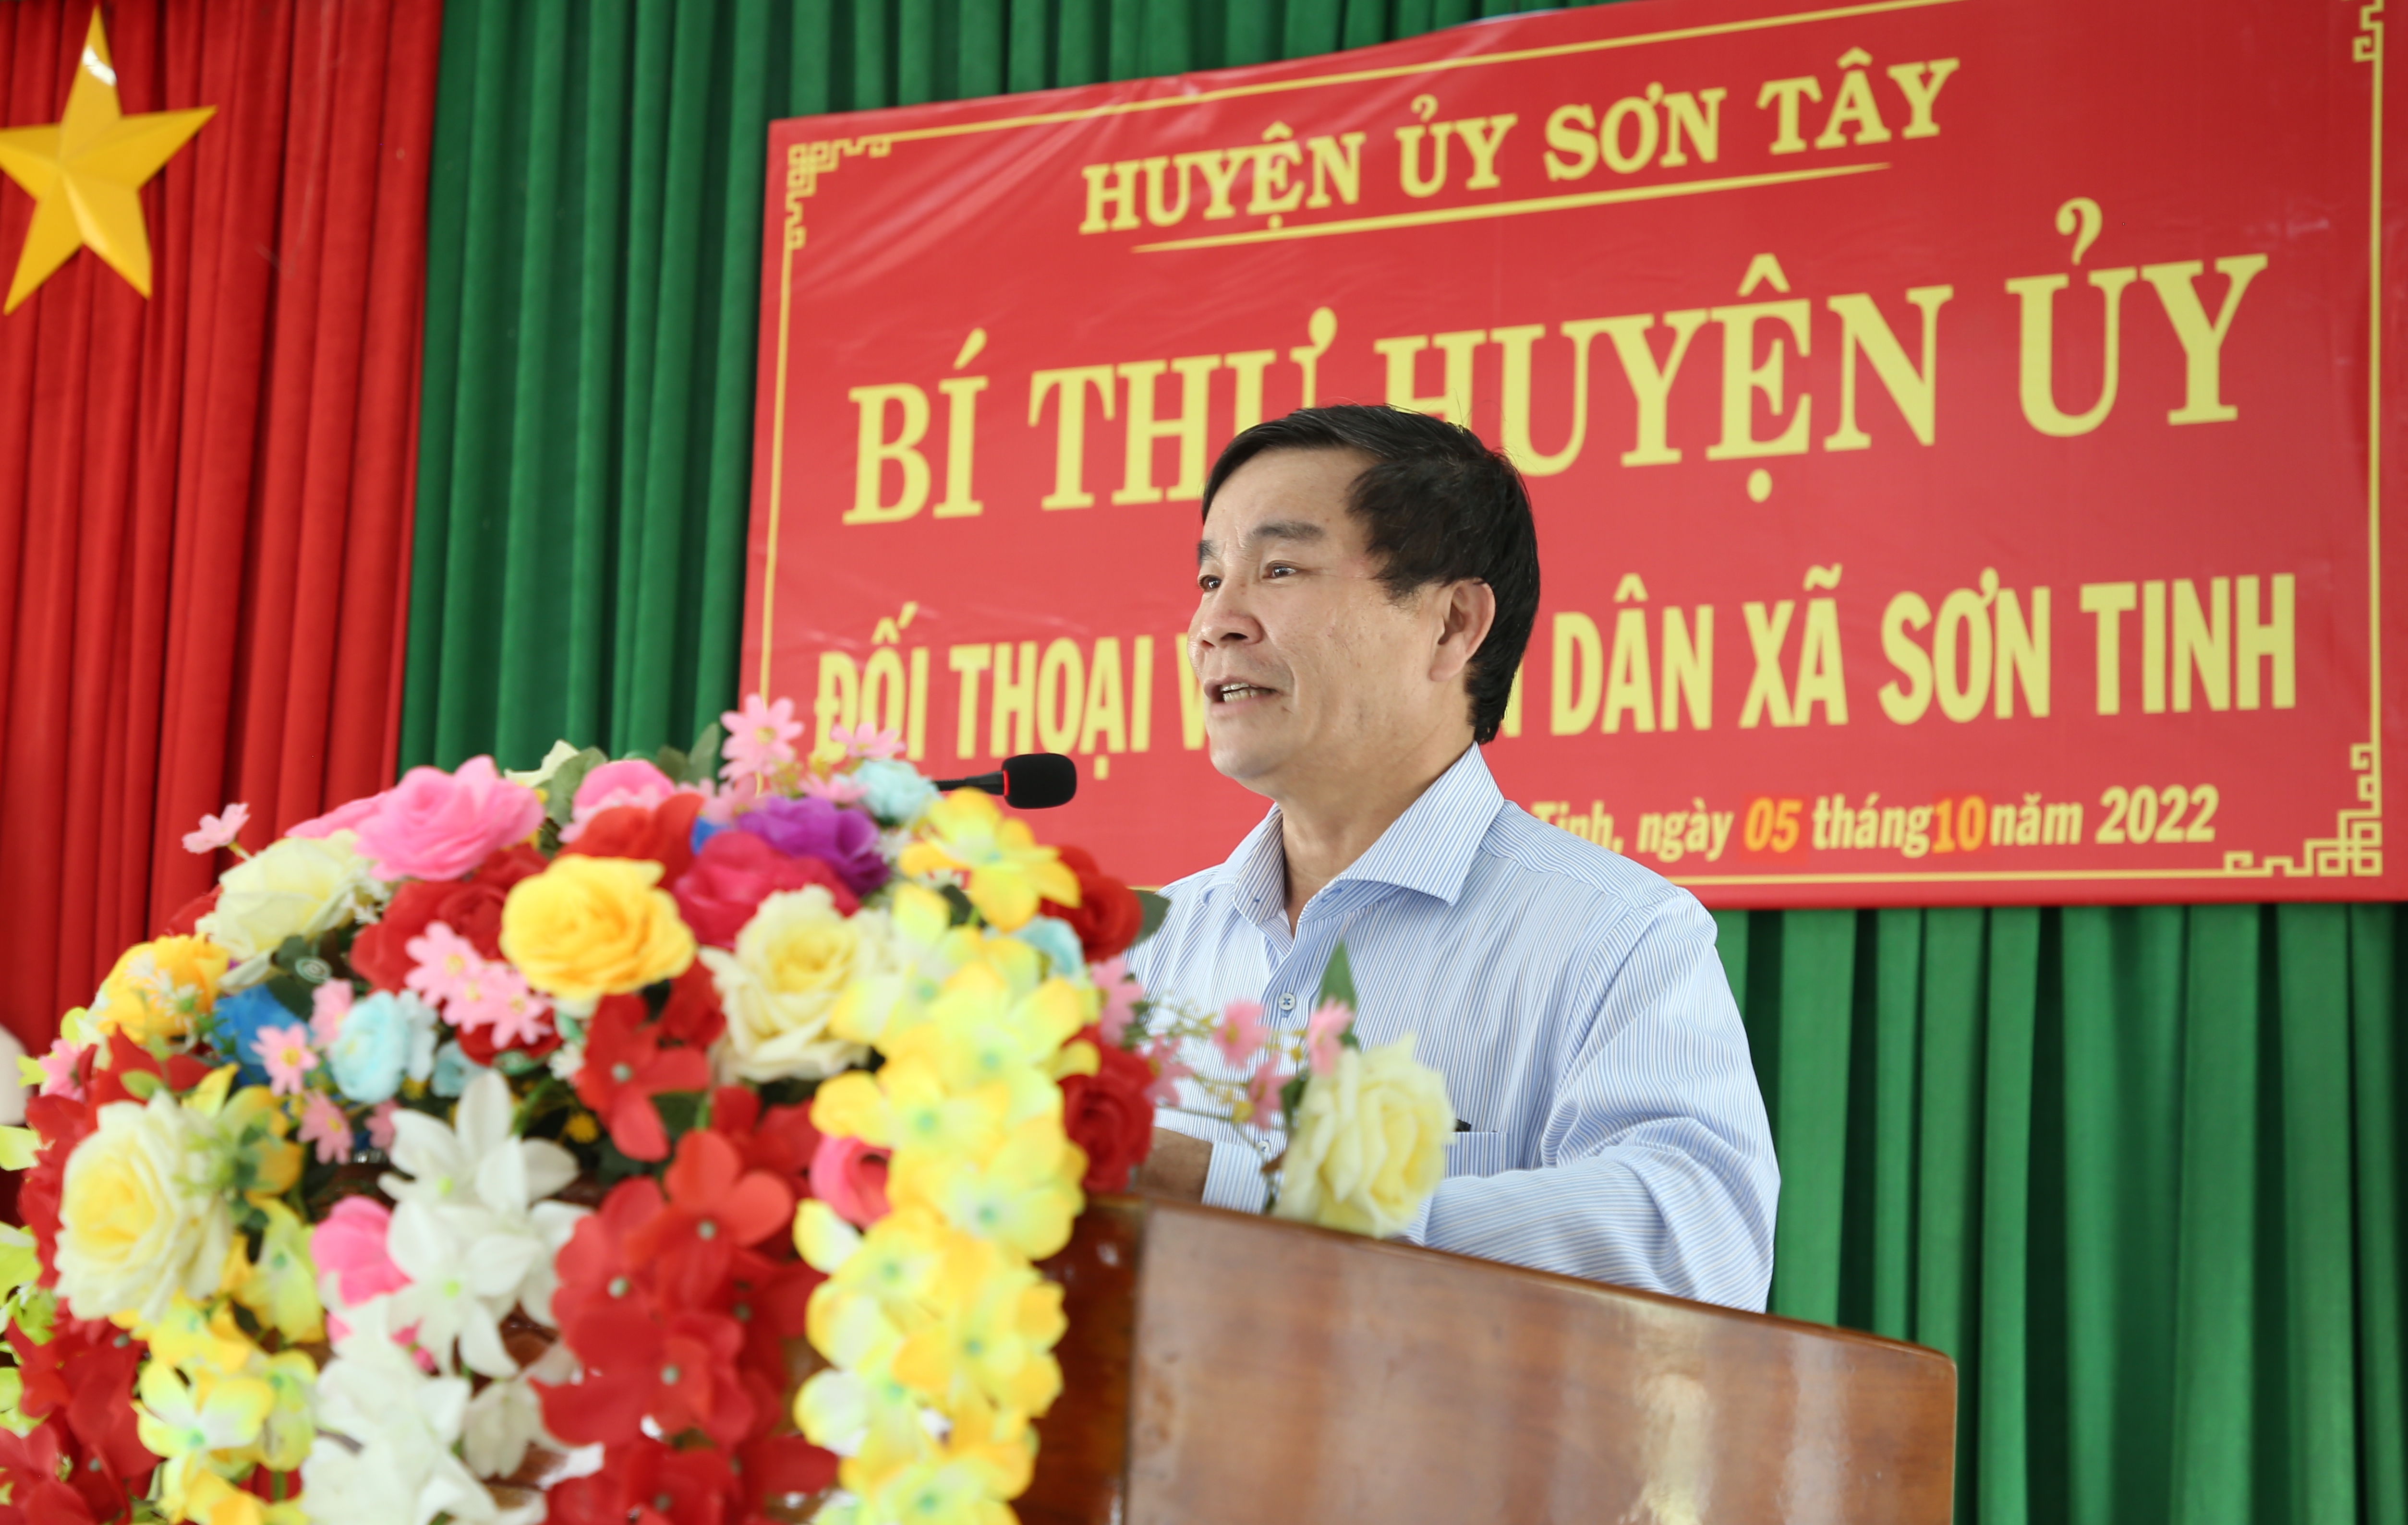 Bí thư Huyện ủy Sơn Tây đối thoại trực tiếp với Nhân dân xã Sơn Tinh.